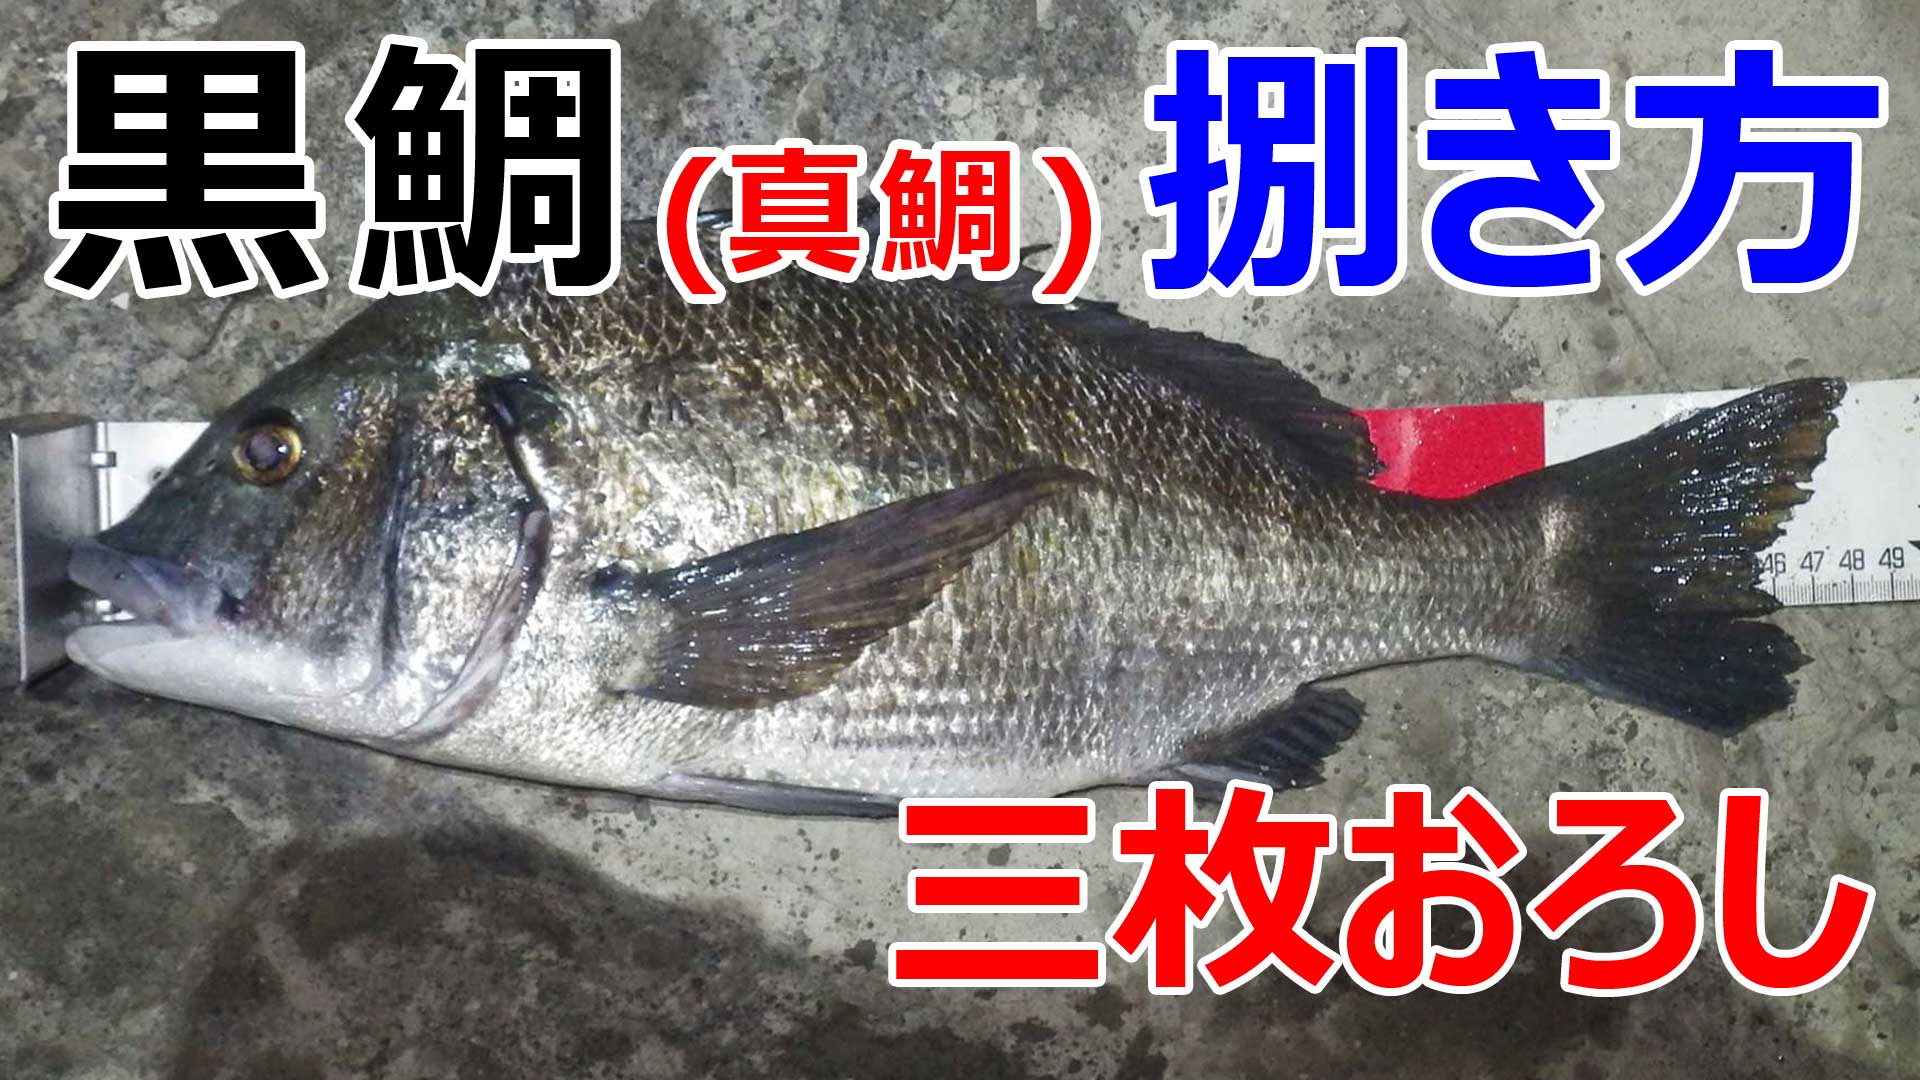 真鯛 黒鯛の三枚おろしの動画 魚料理レシピデータベース